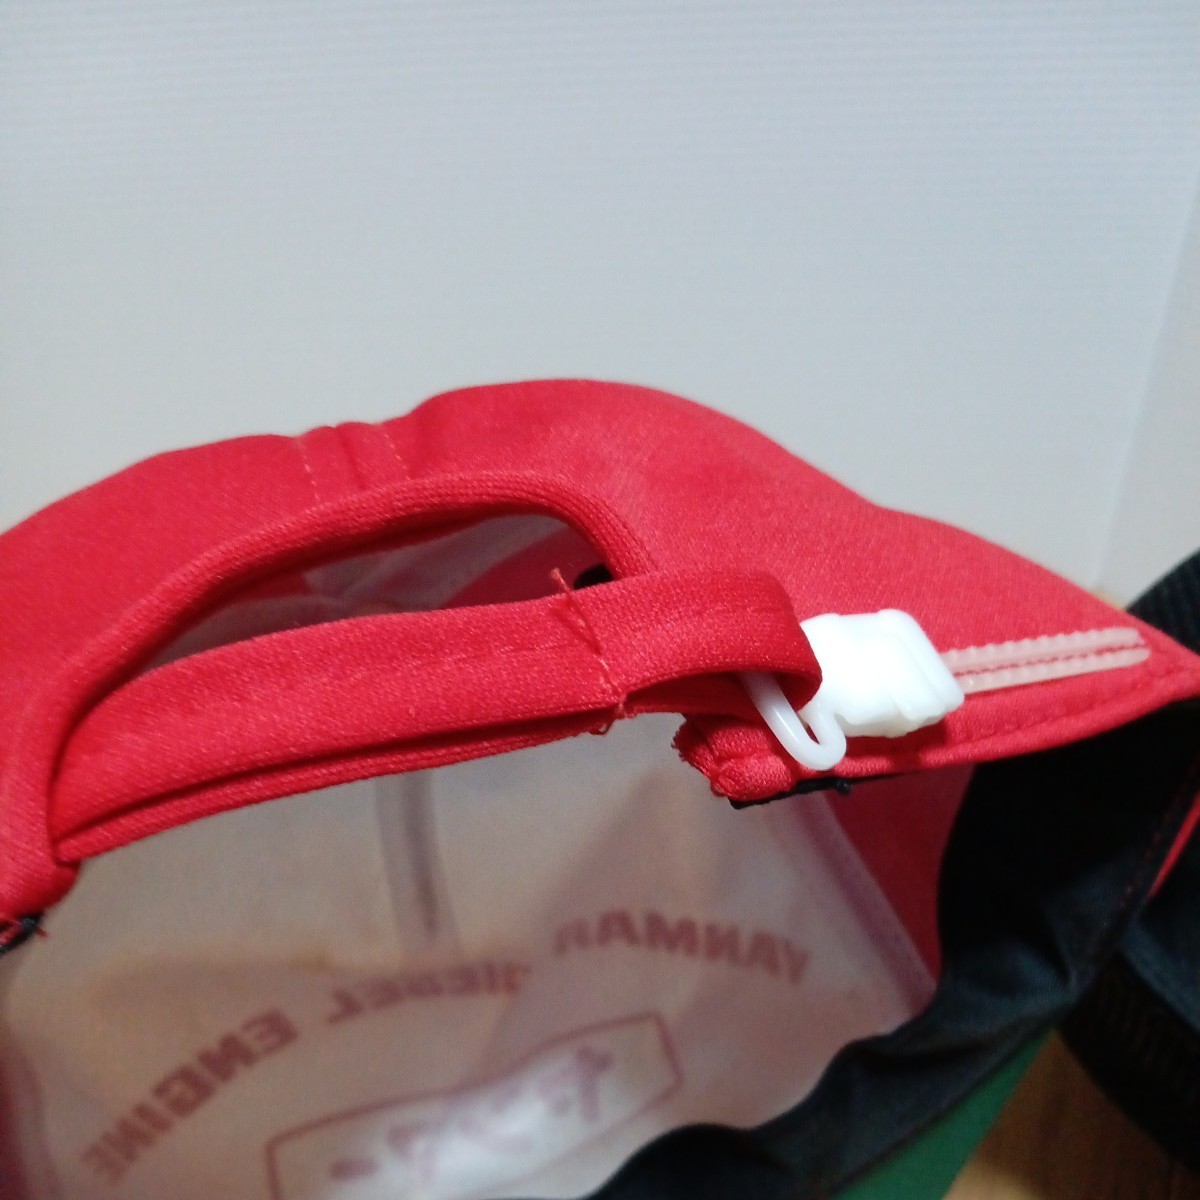  Yanmar [YANMAR колпак 2 шт ] шляпа принт вышивка retro красный | белой серии сетка чёрный серия 